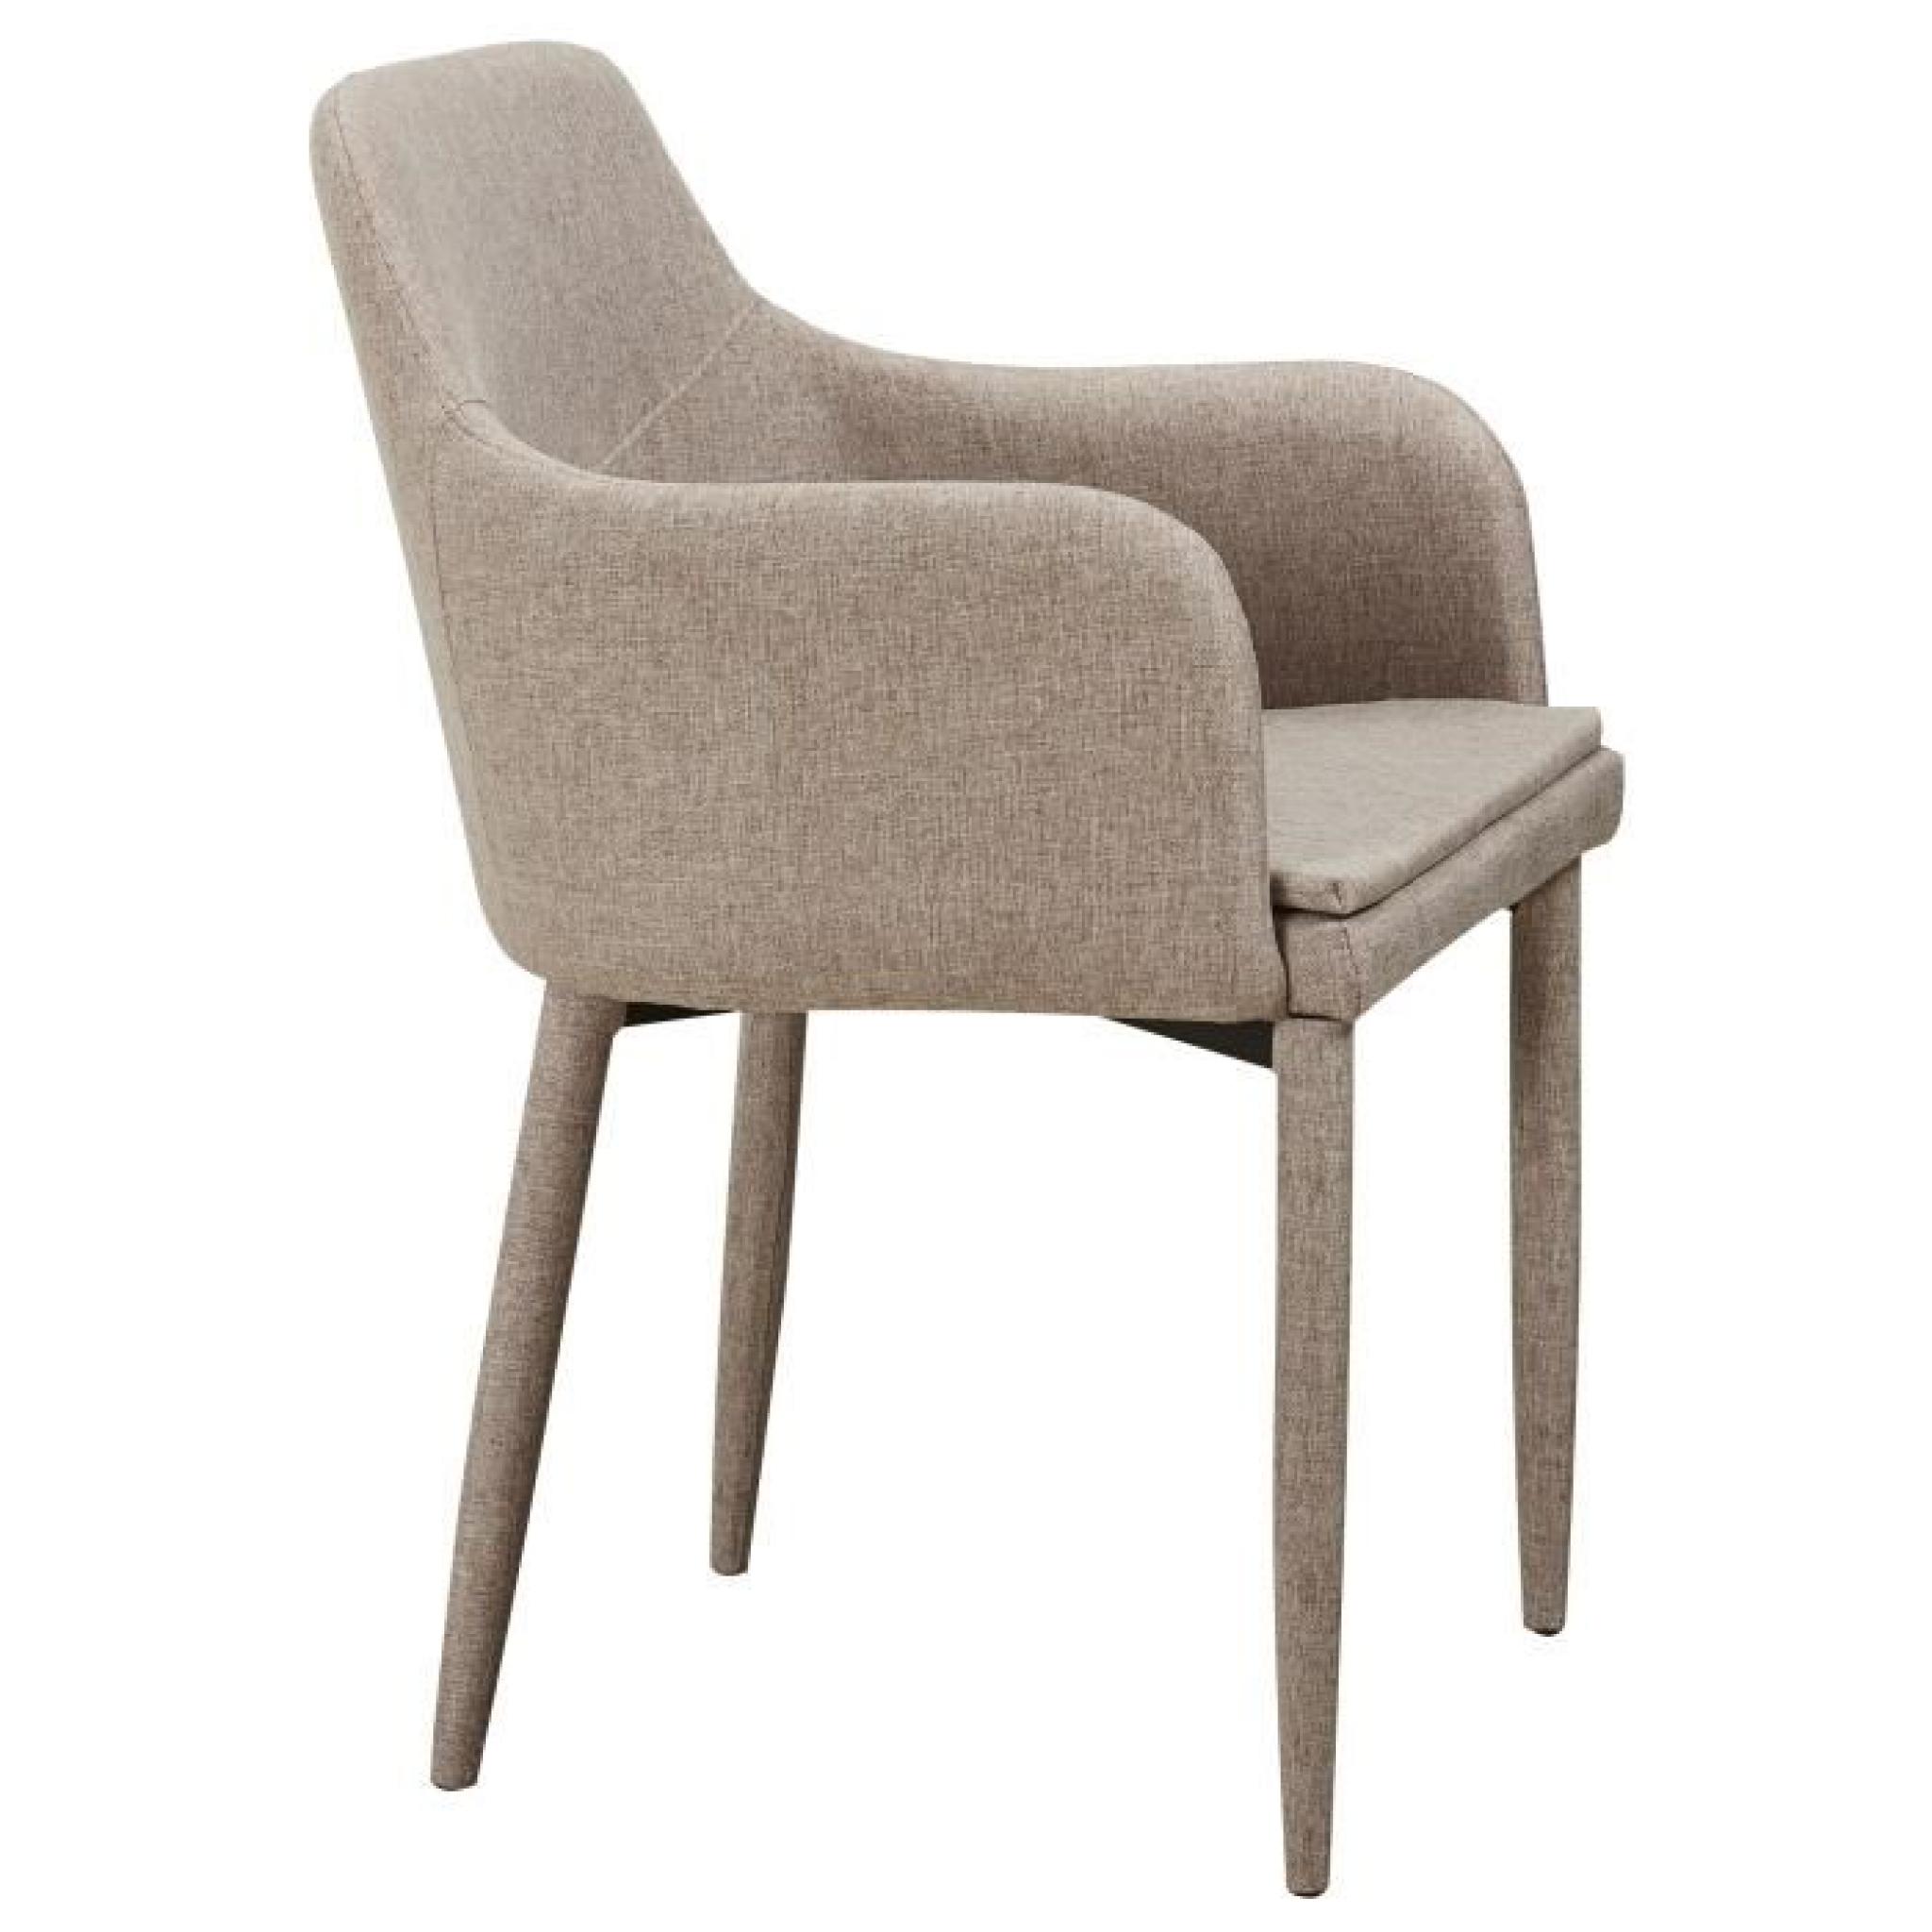 Chaise en tissus design avec accoudoirs coloris beige pas cher